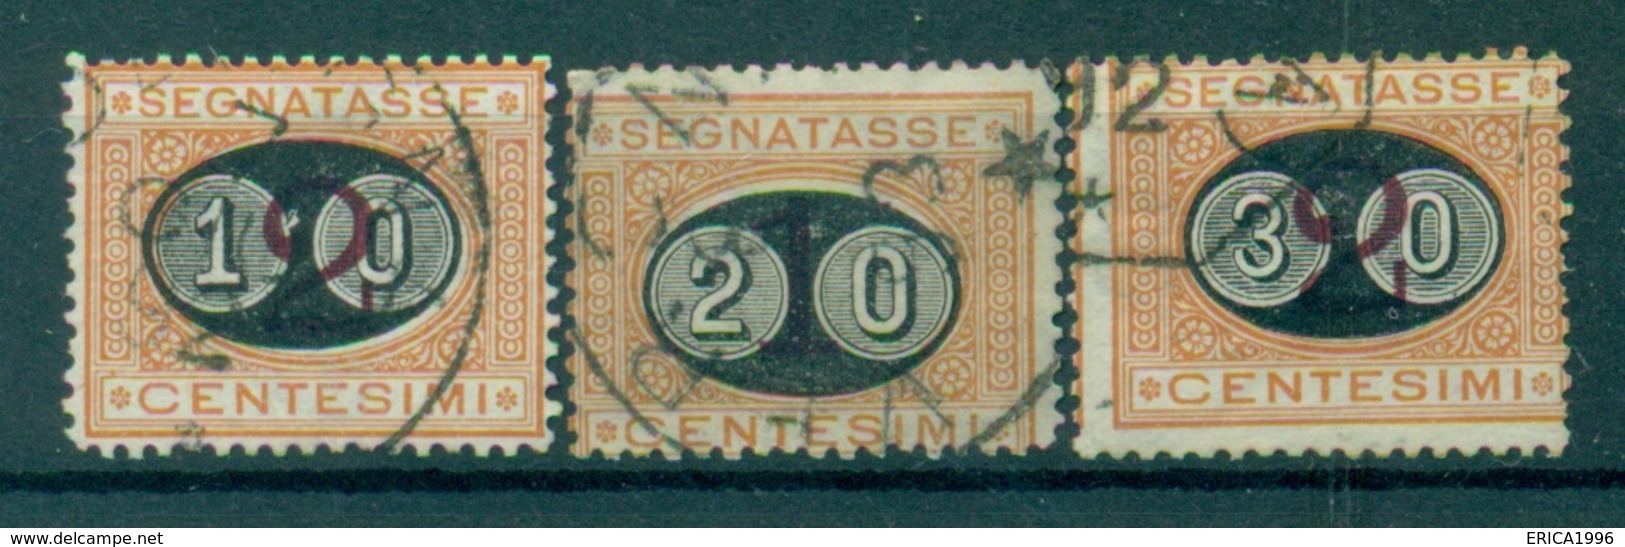 Z827 ITALIA REGNO 1890-91 Segnatasse Sass. 17-19, Serie Completa, Usati, Valore Catalogo € 90, Ottime Condizioni - Portomarken